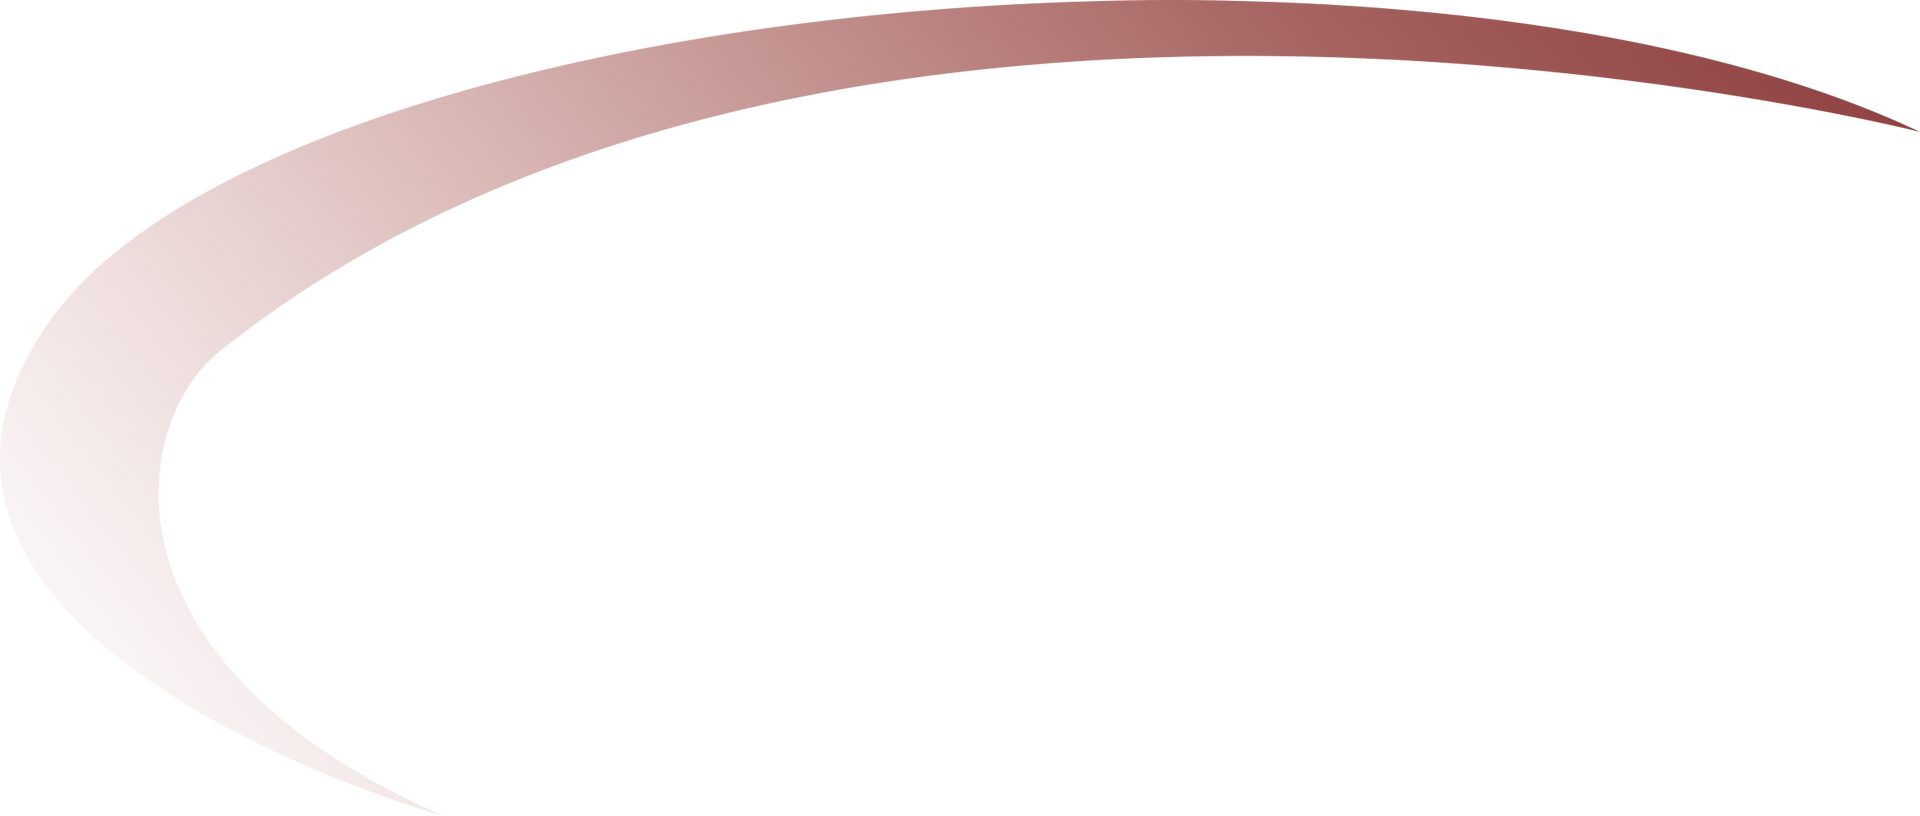 Lakeside Deck Builders